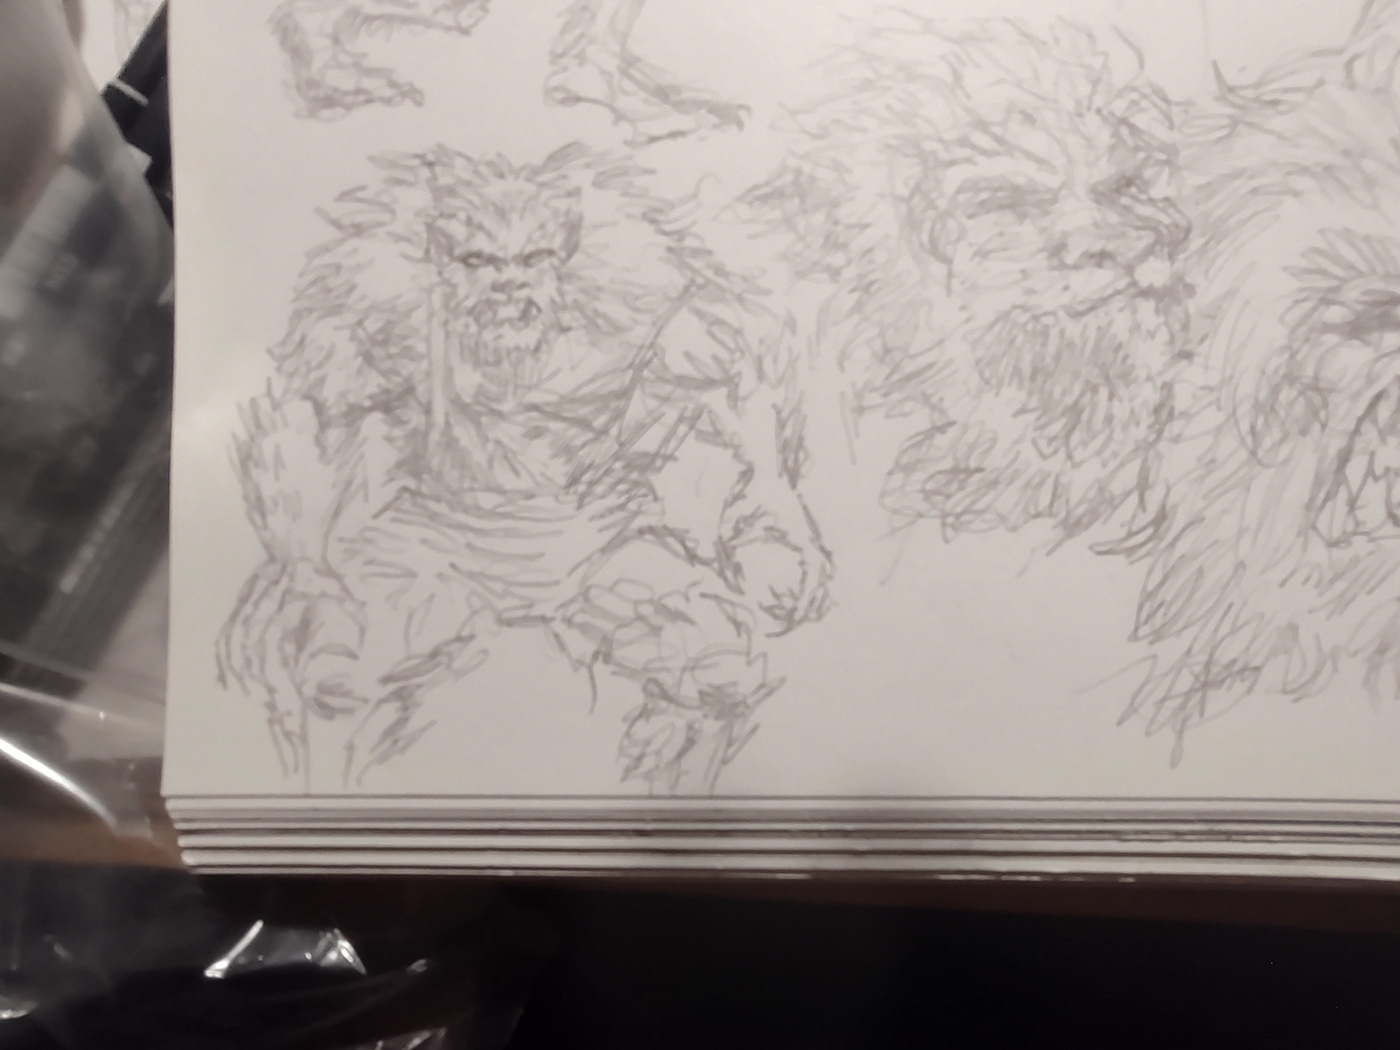 TRADITIONAL ART superheroes monsters Movies Scifi paint Marker Pastels batman Hulk spiderman frankenstein dracula Wolfman Werewolf sketchbook no digital